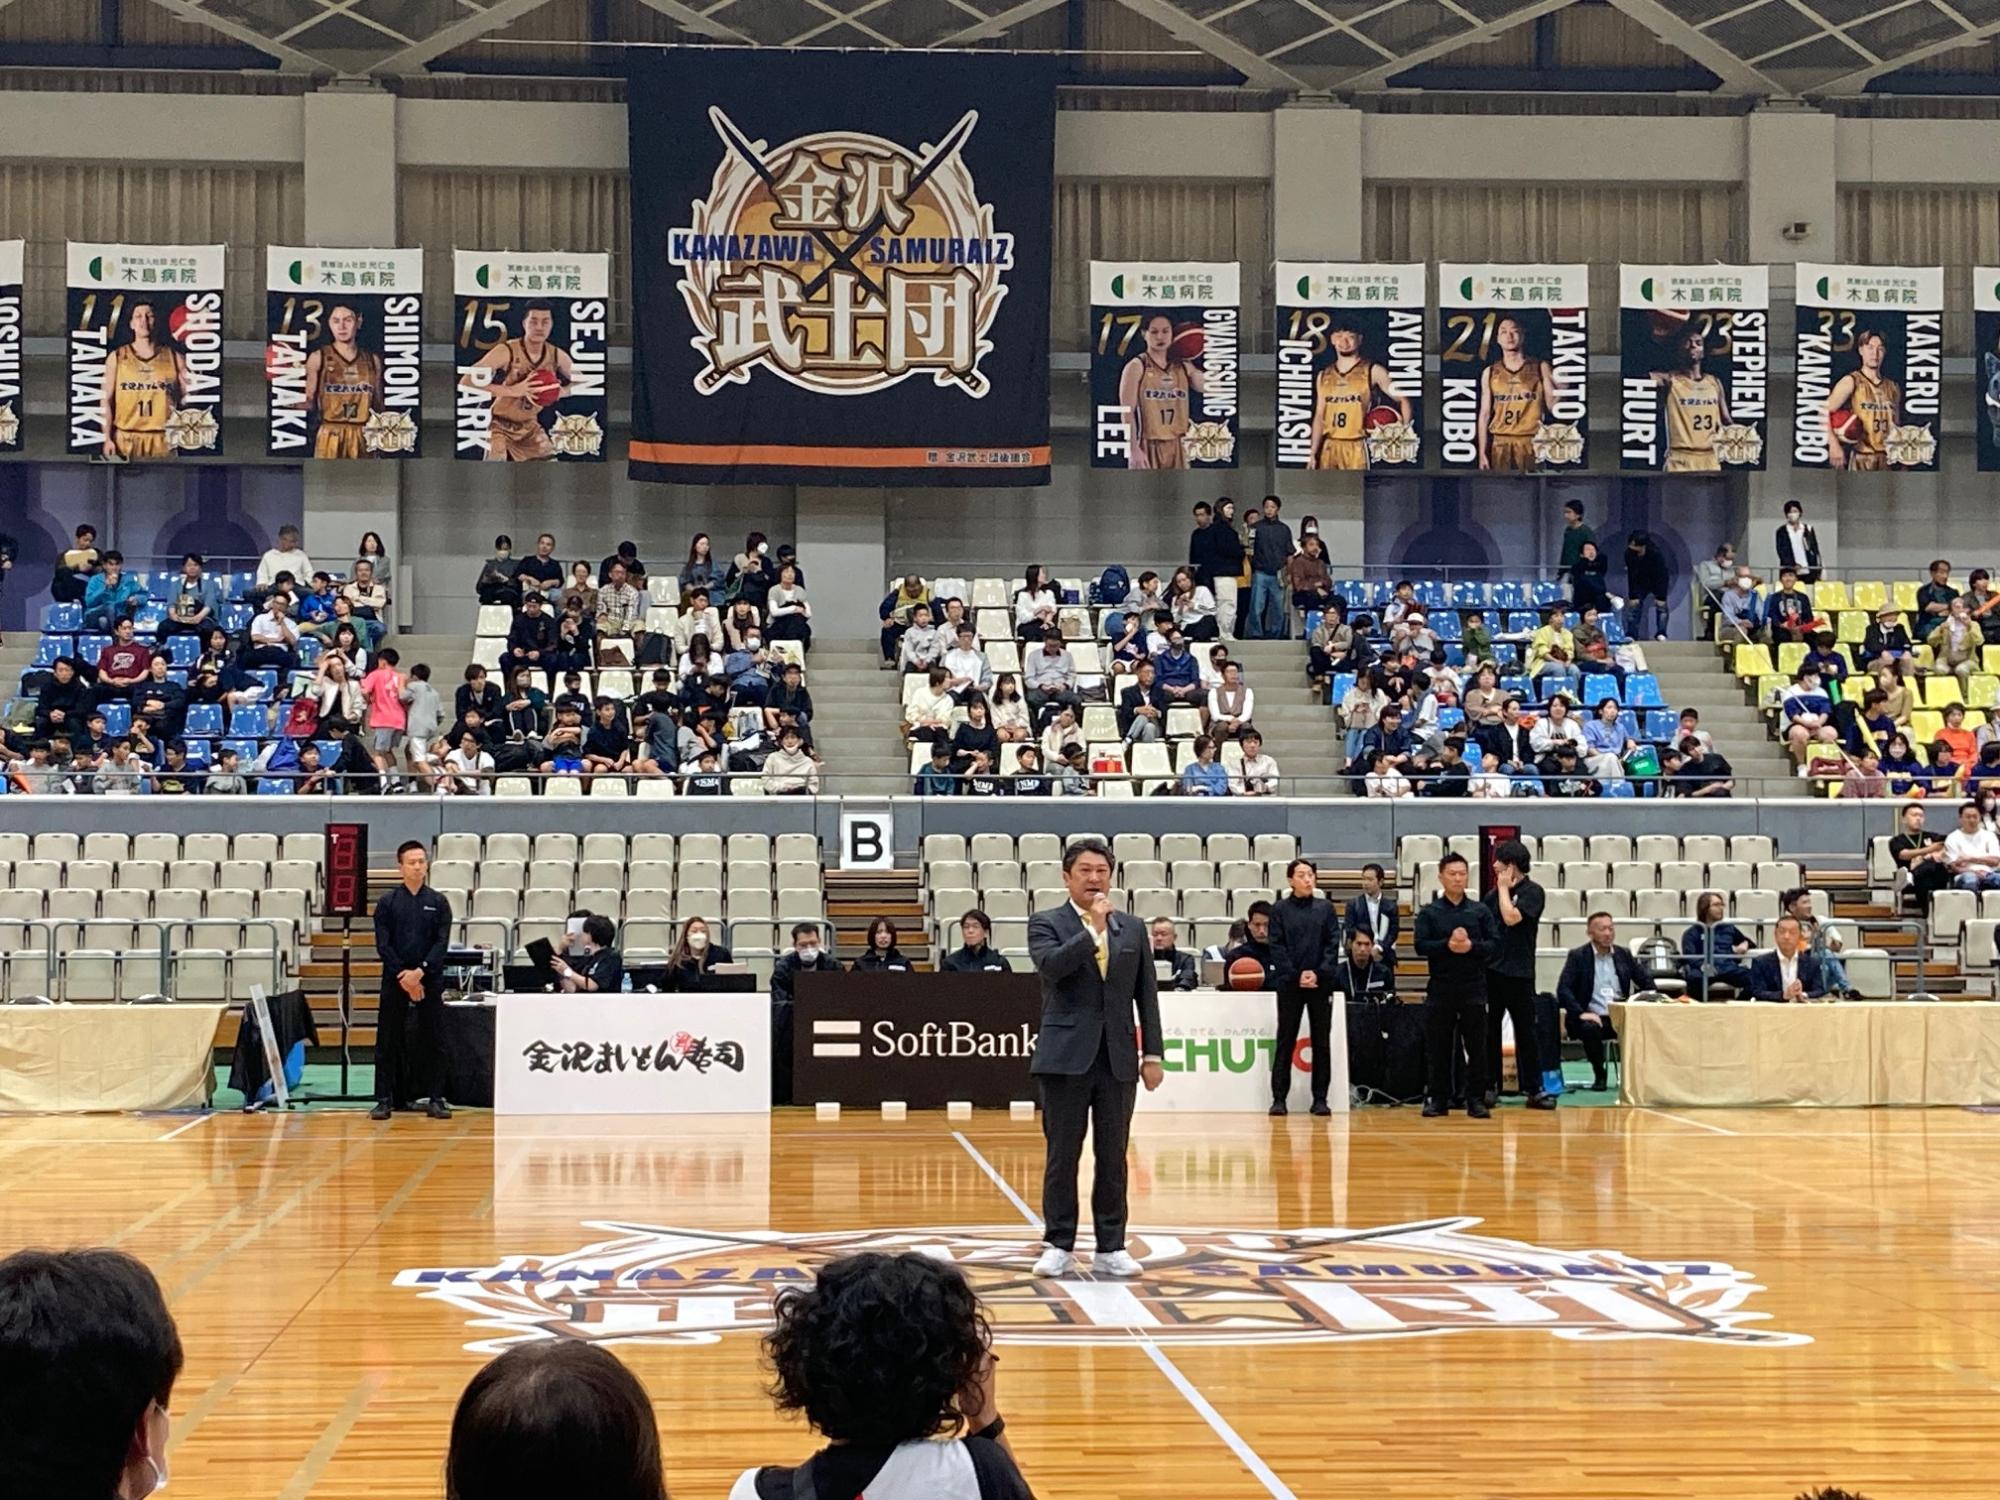 バスケットボールB3リーグ金沢武士団の試合前セレモニー